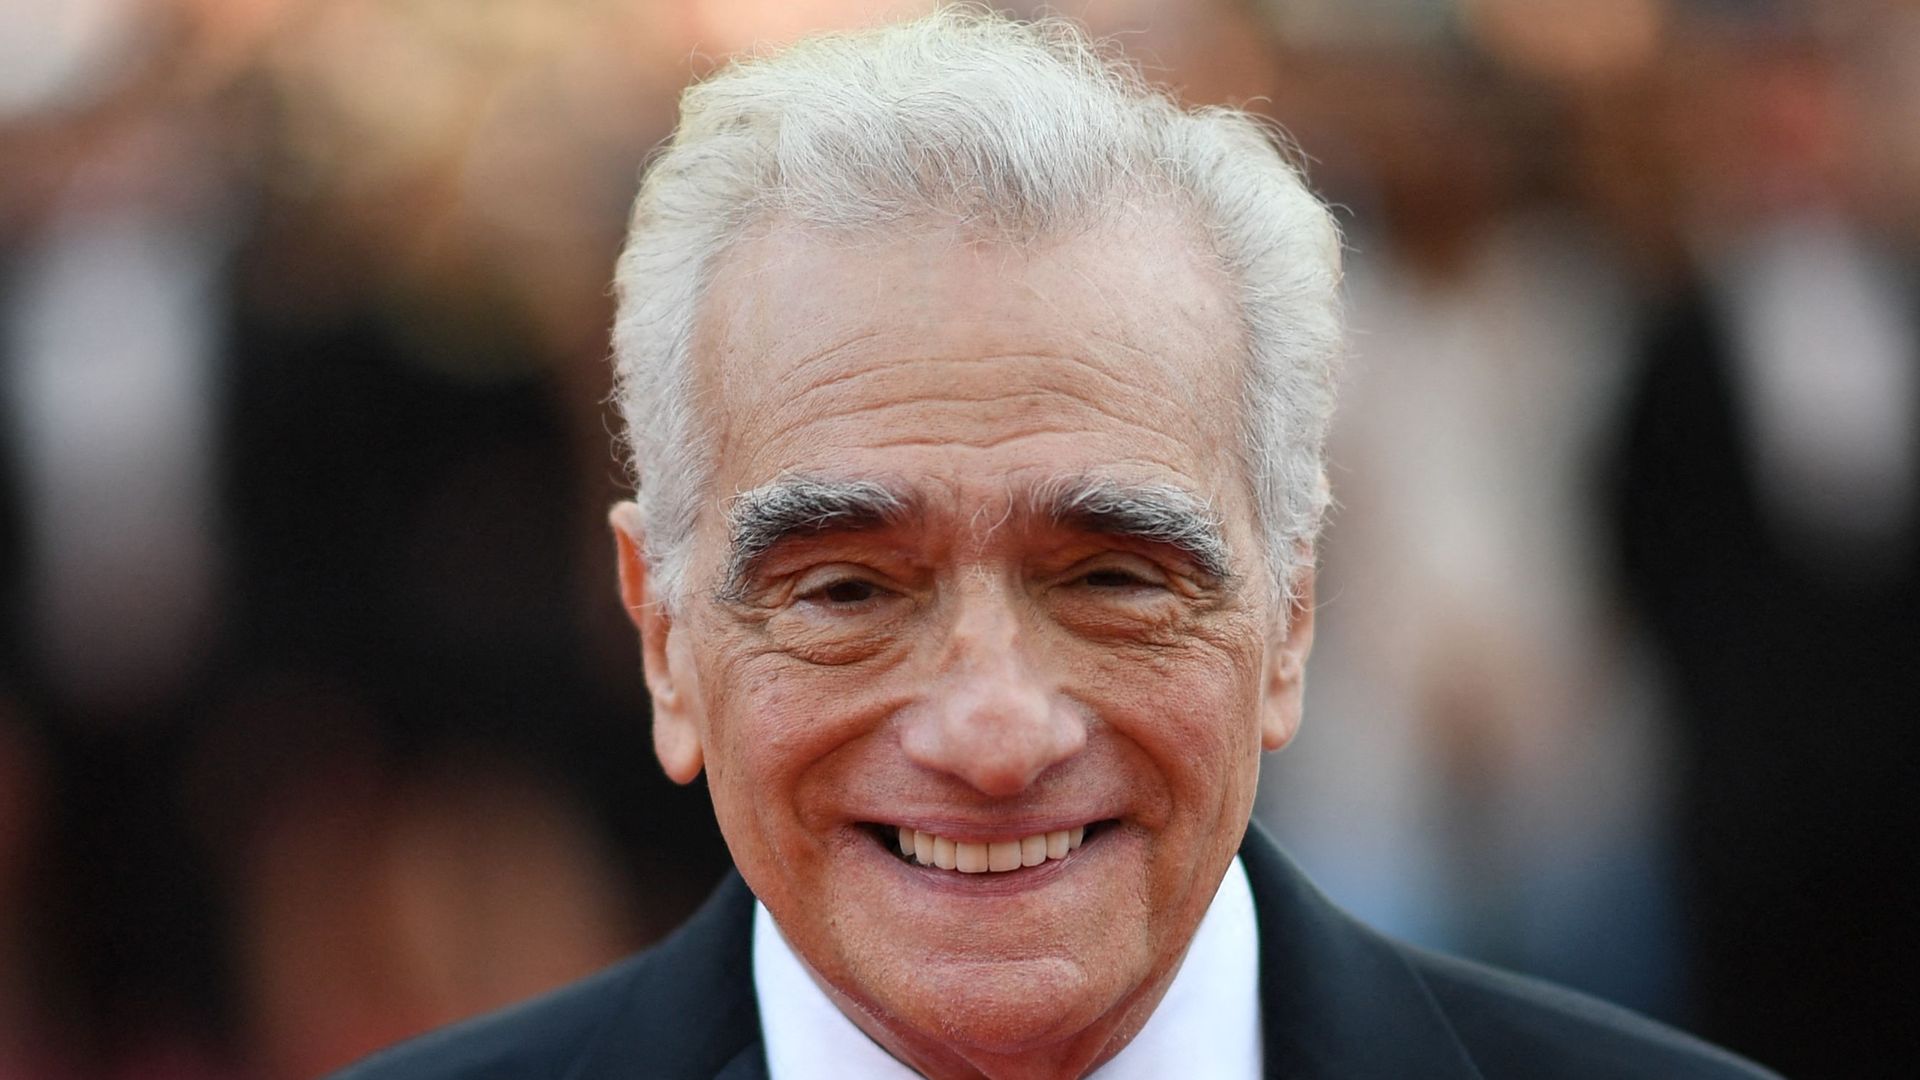 Martin Scorsese in tuxedo on red carpet 